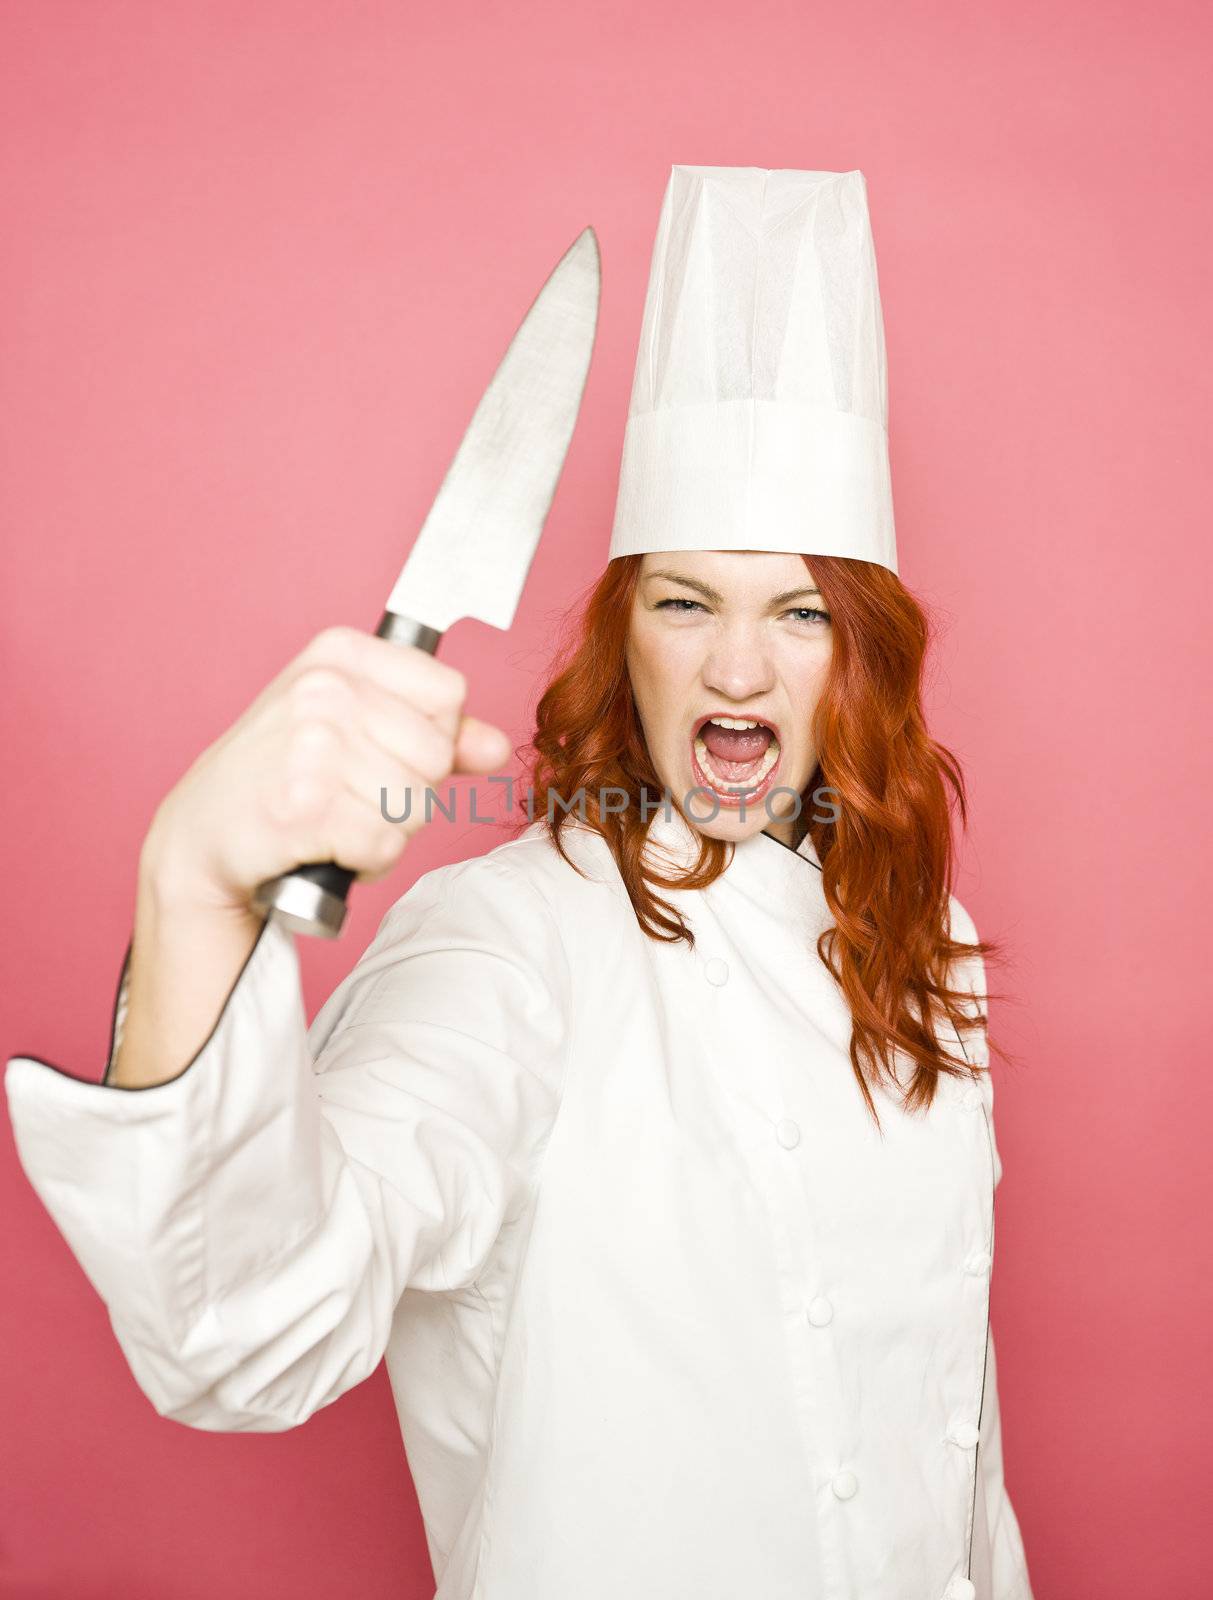 Female chef by gemenacom